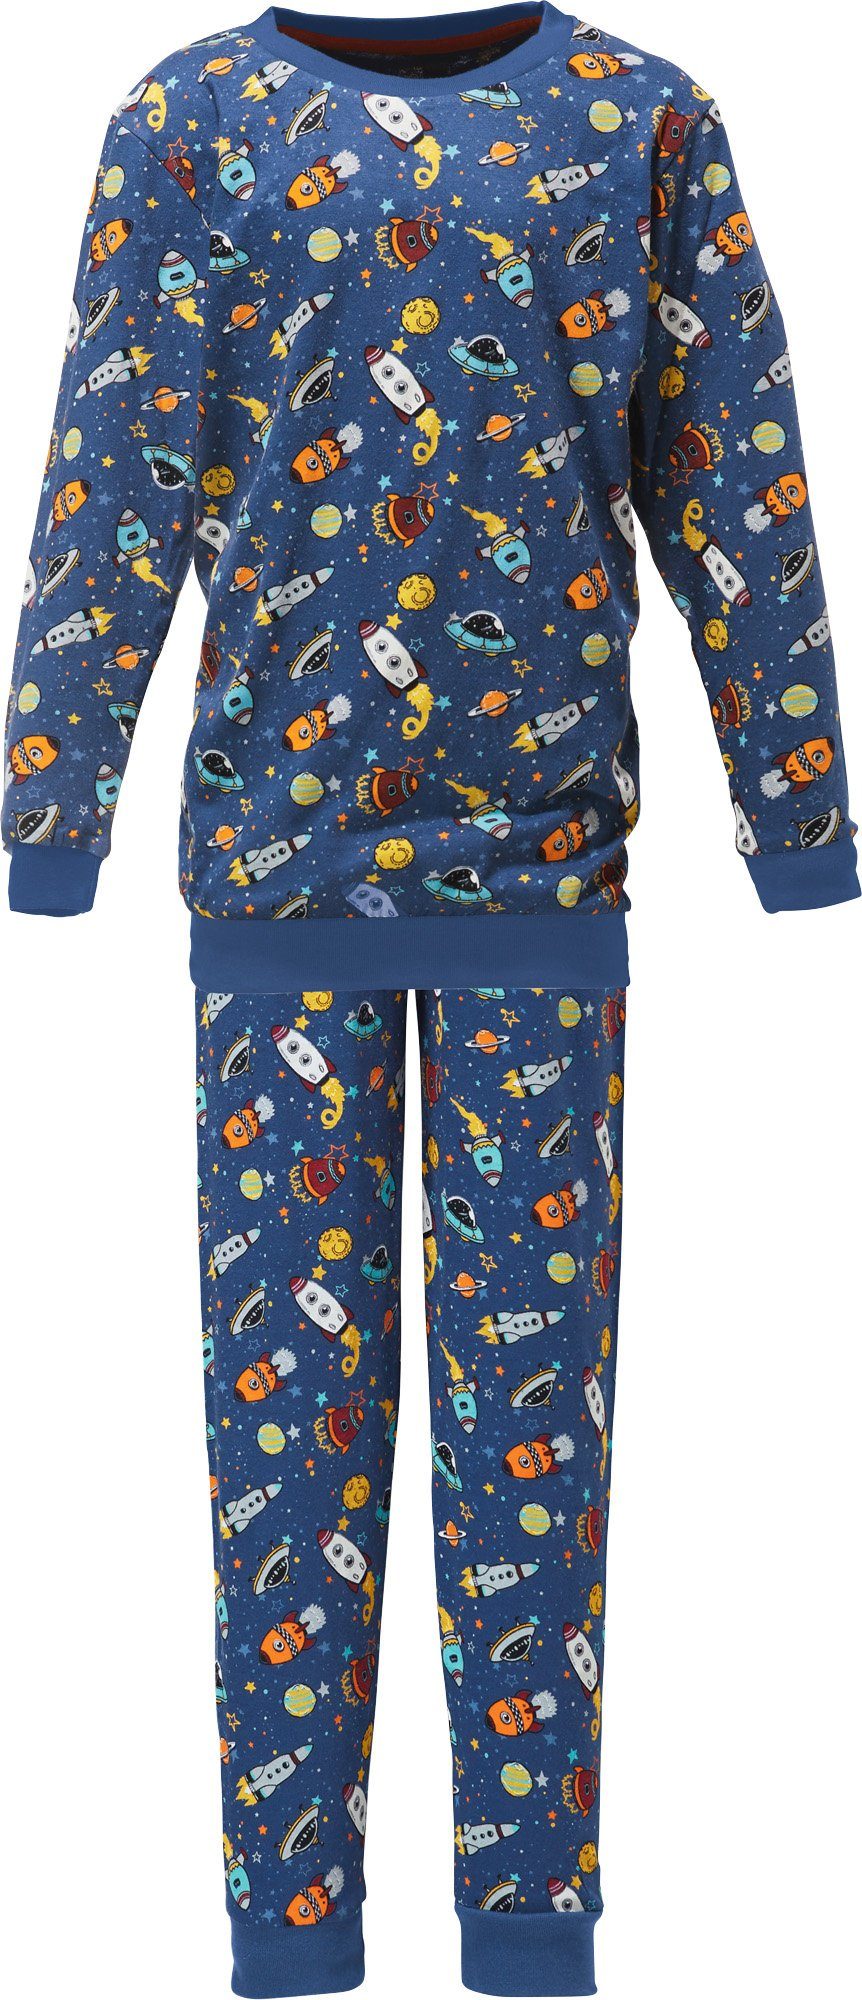 Erwin Müller Single-Jersey Kinder-Schlafanzug Pyjama gemustert